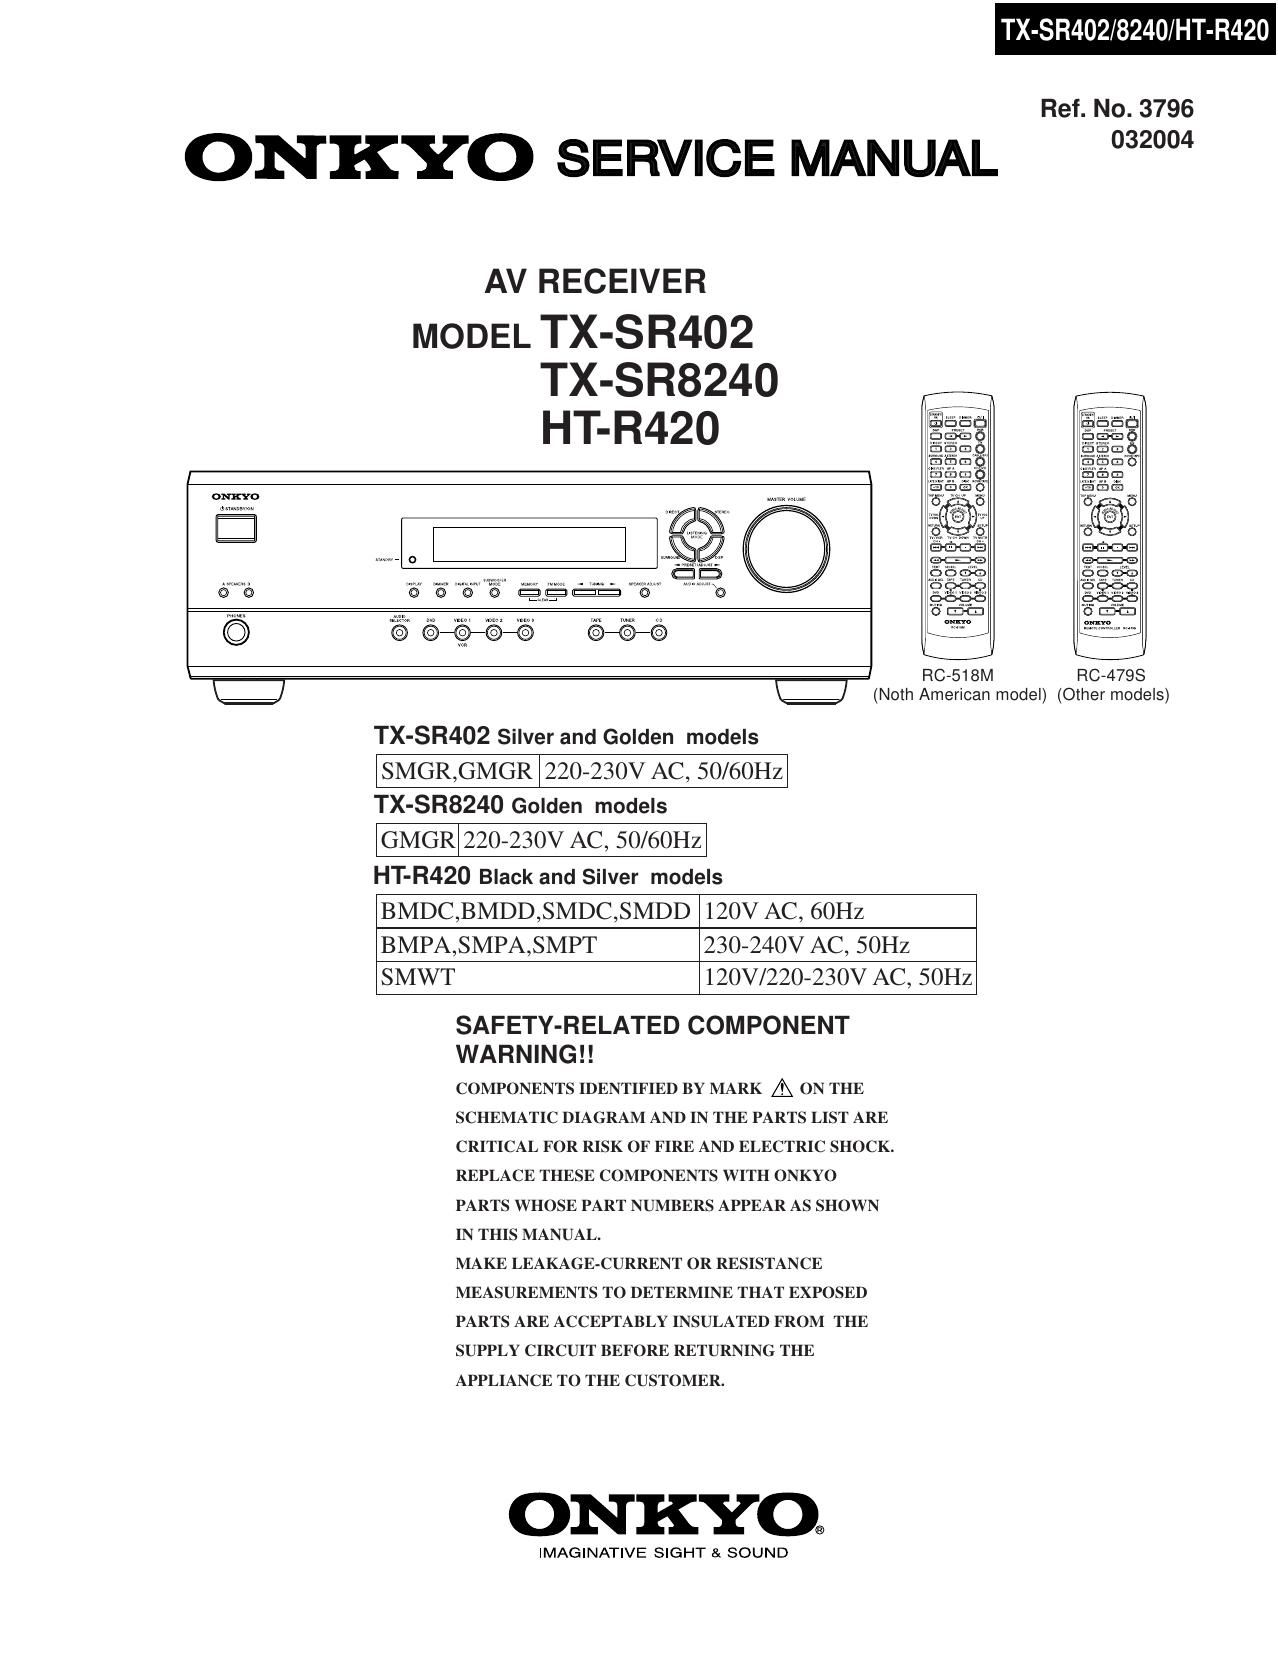 Onkyo TXSR 8240 Service Manual